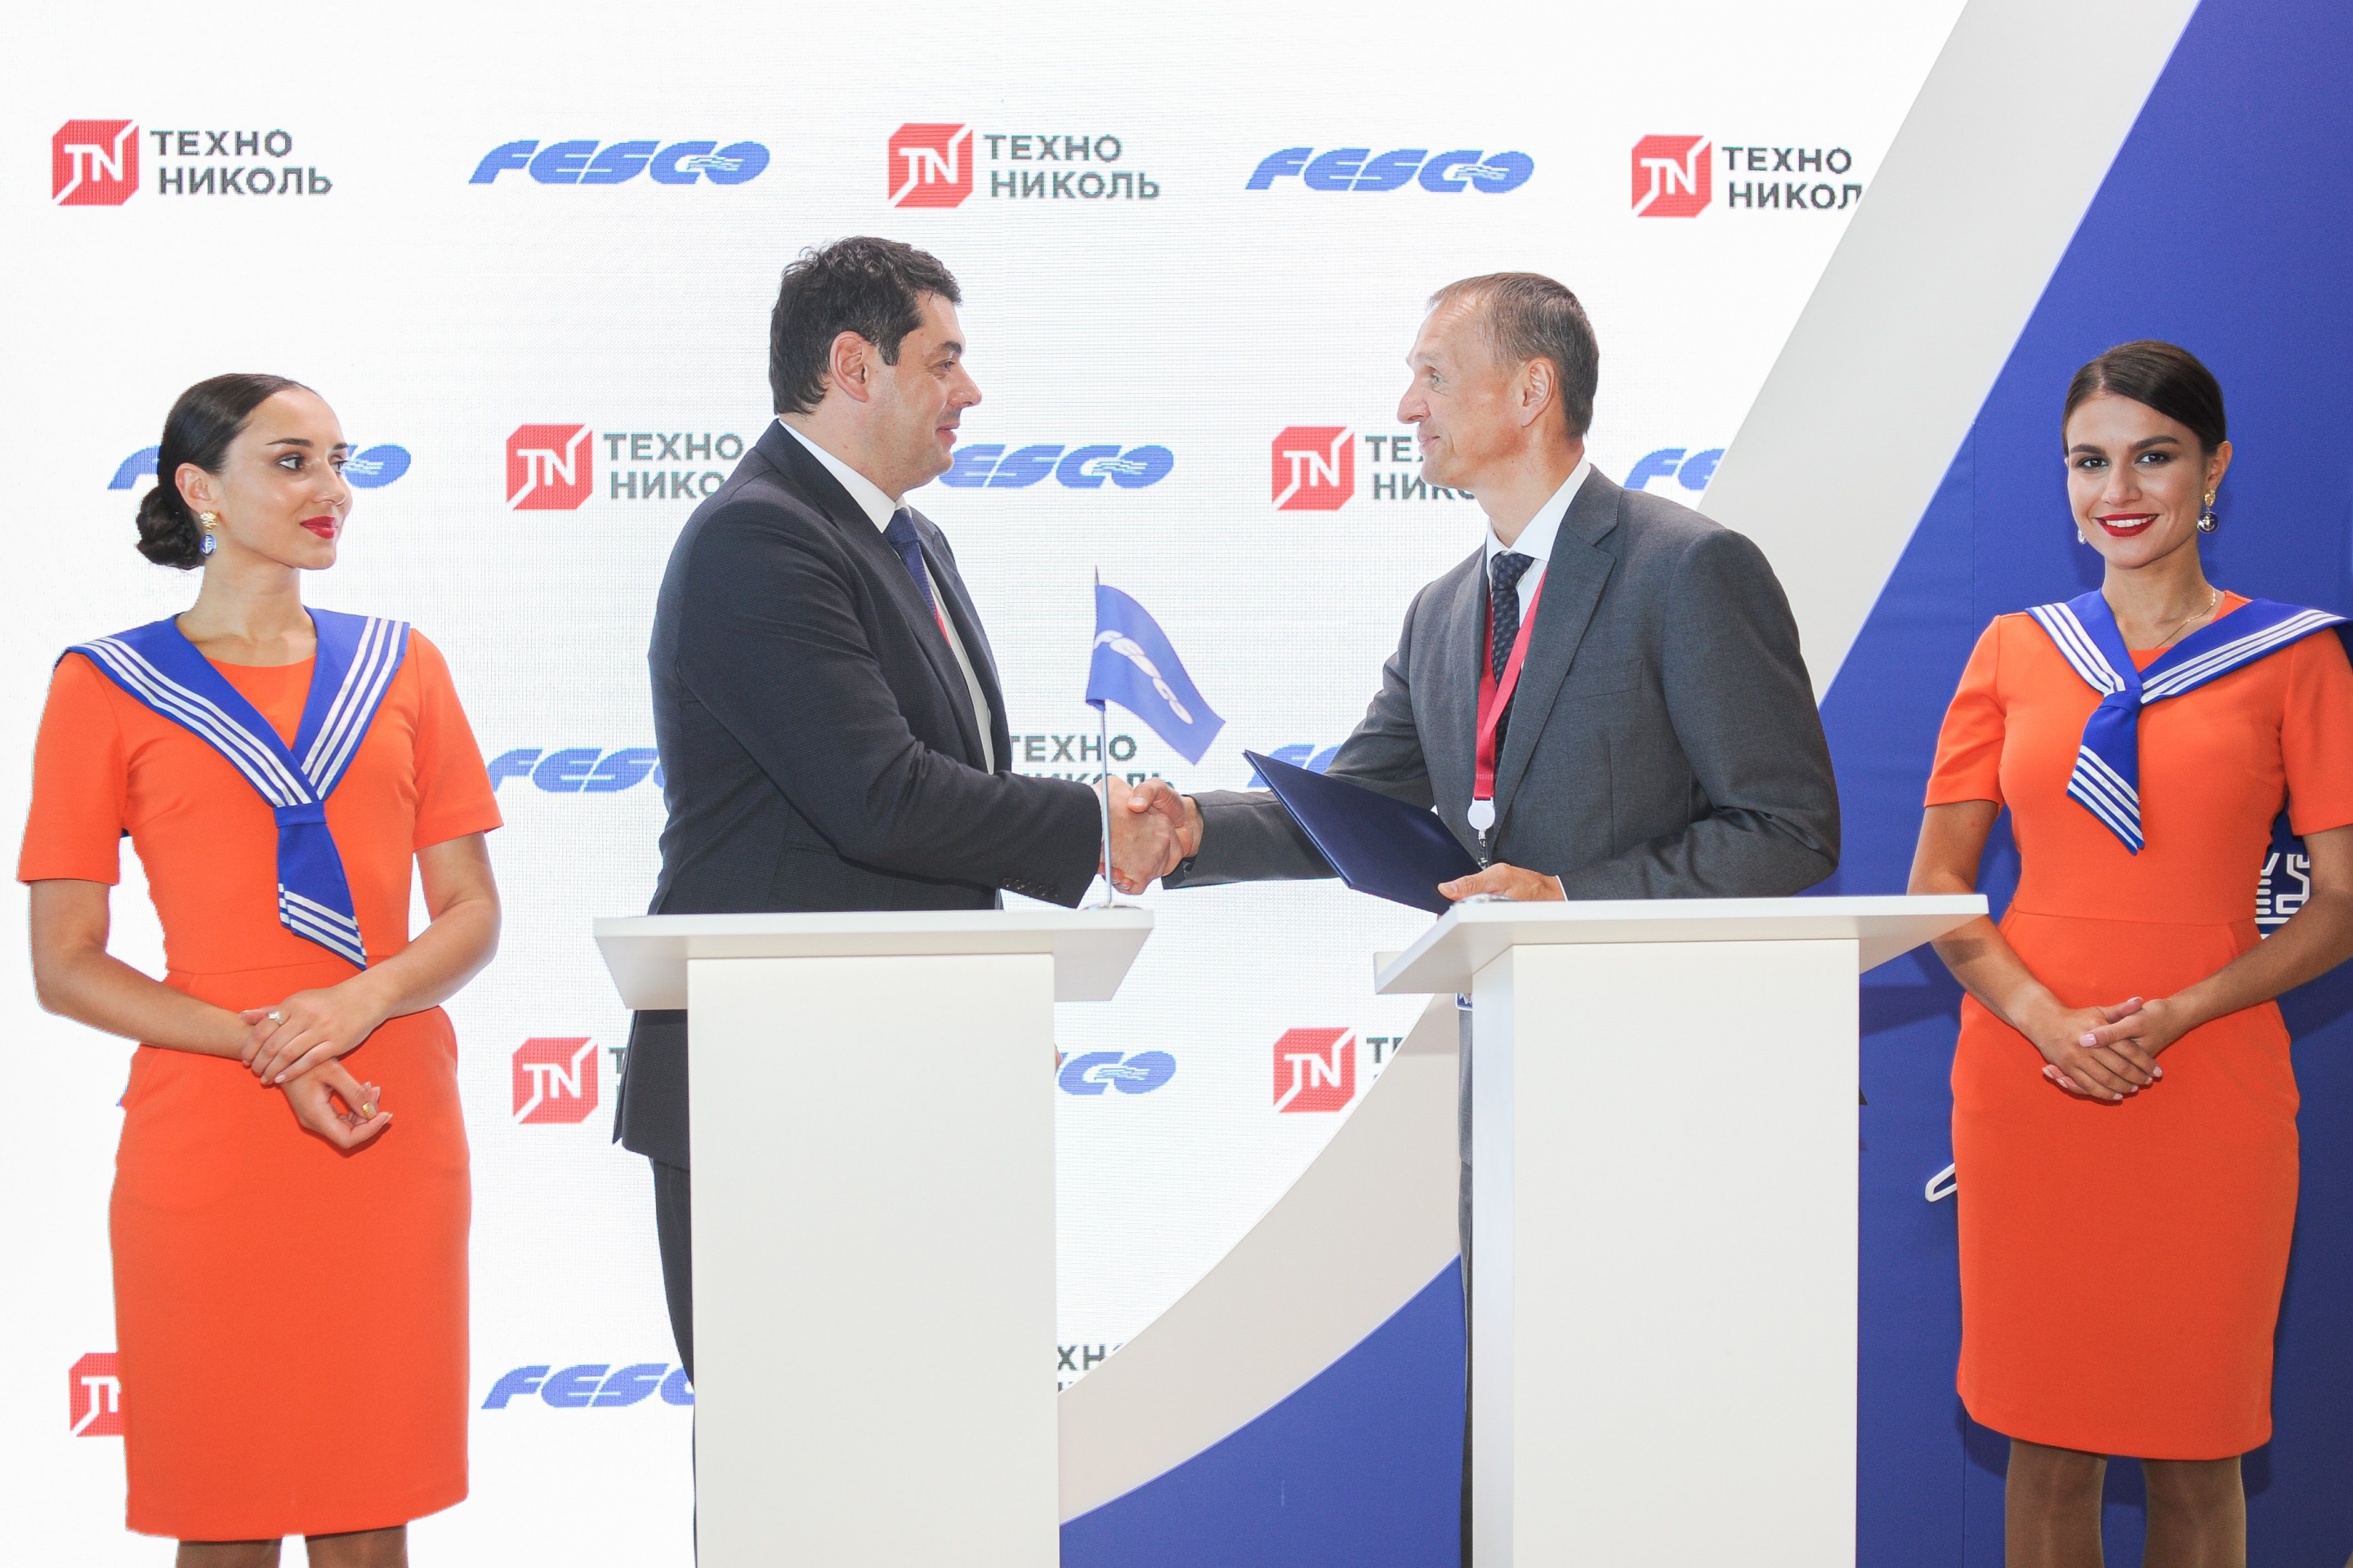 FESCO и ТЕХНОНИКОЛЬ будут развивать экспортные и внутренние перевозки стройматериалов из Хабаровска